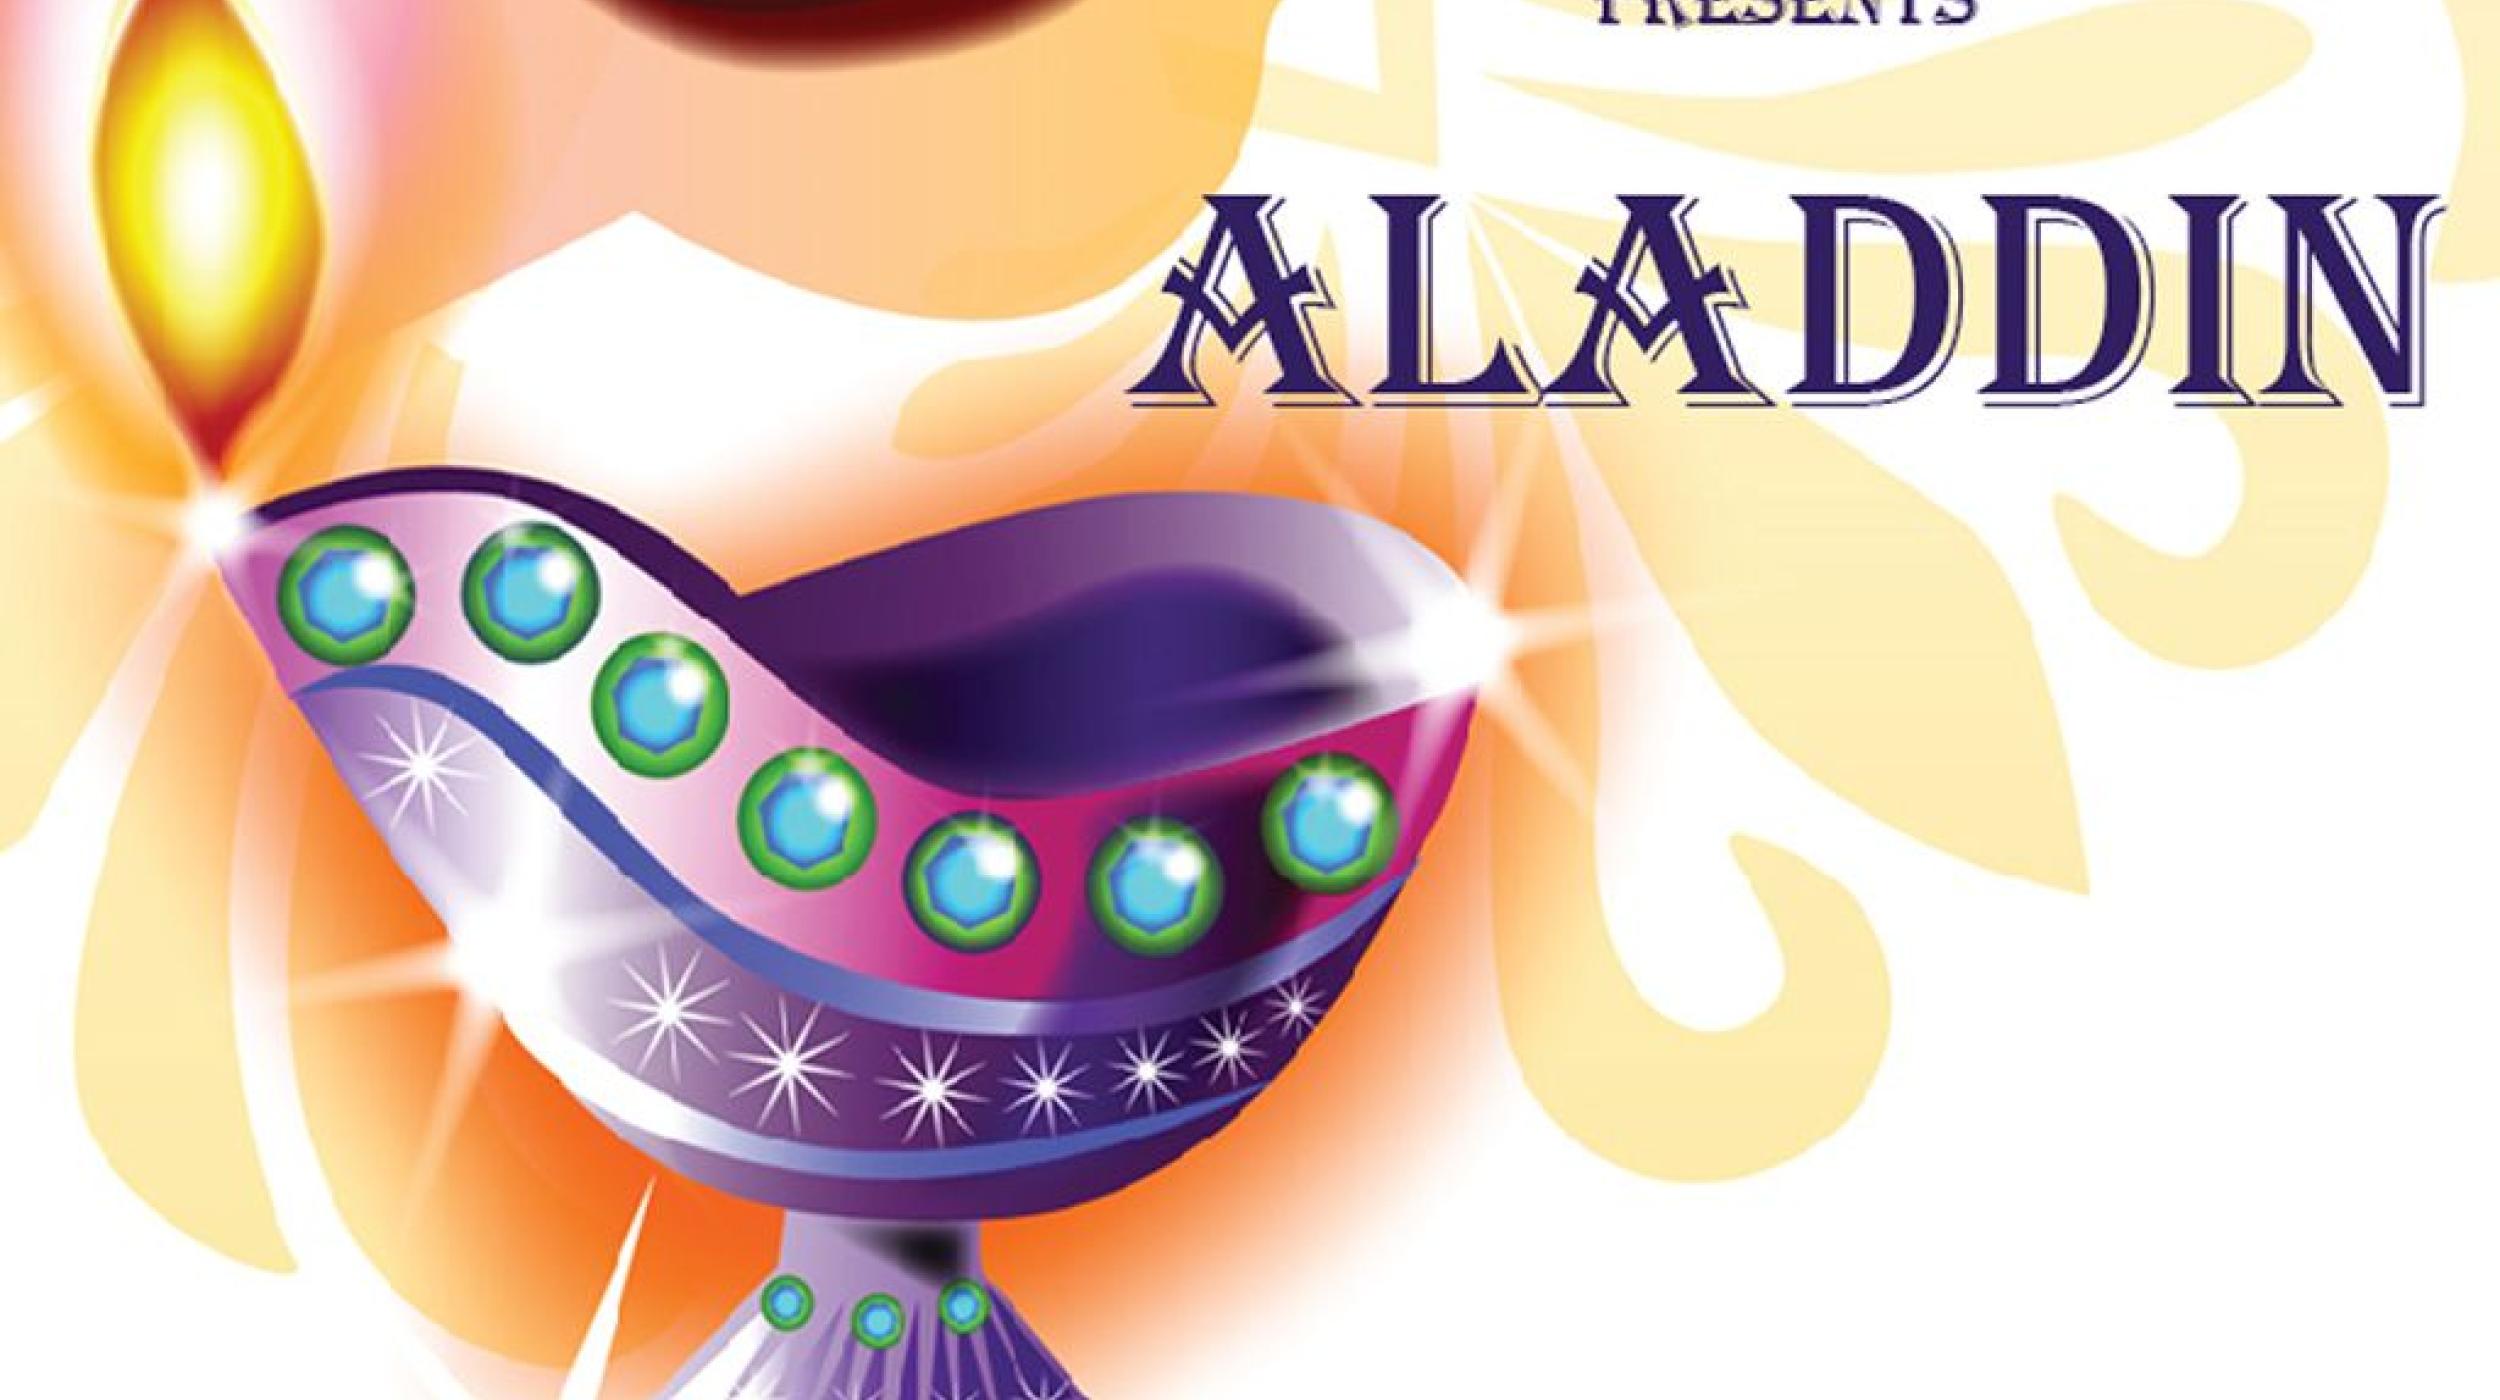 MedSoc presents Aladdin